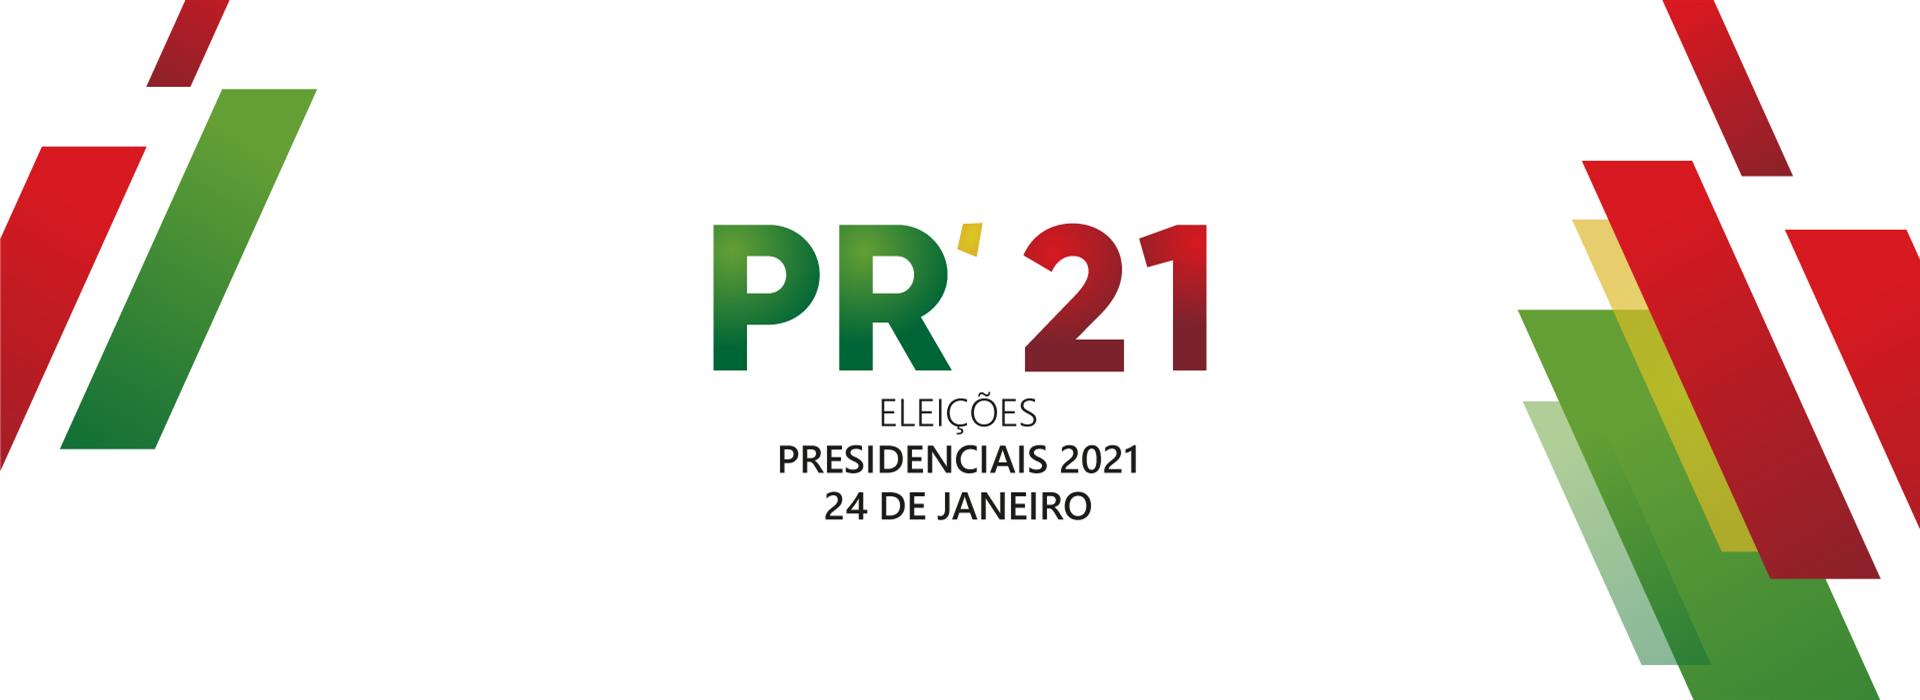 presidenciais2021 0e1a5